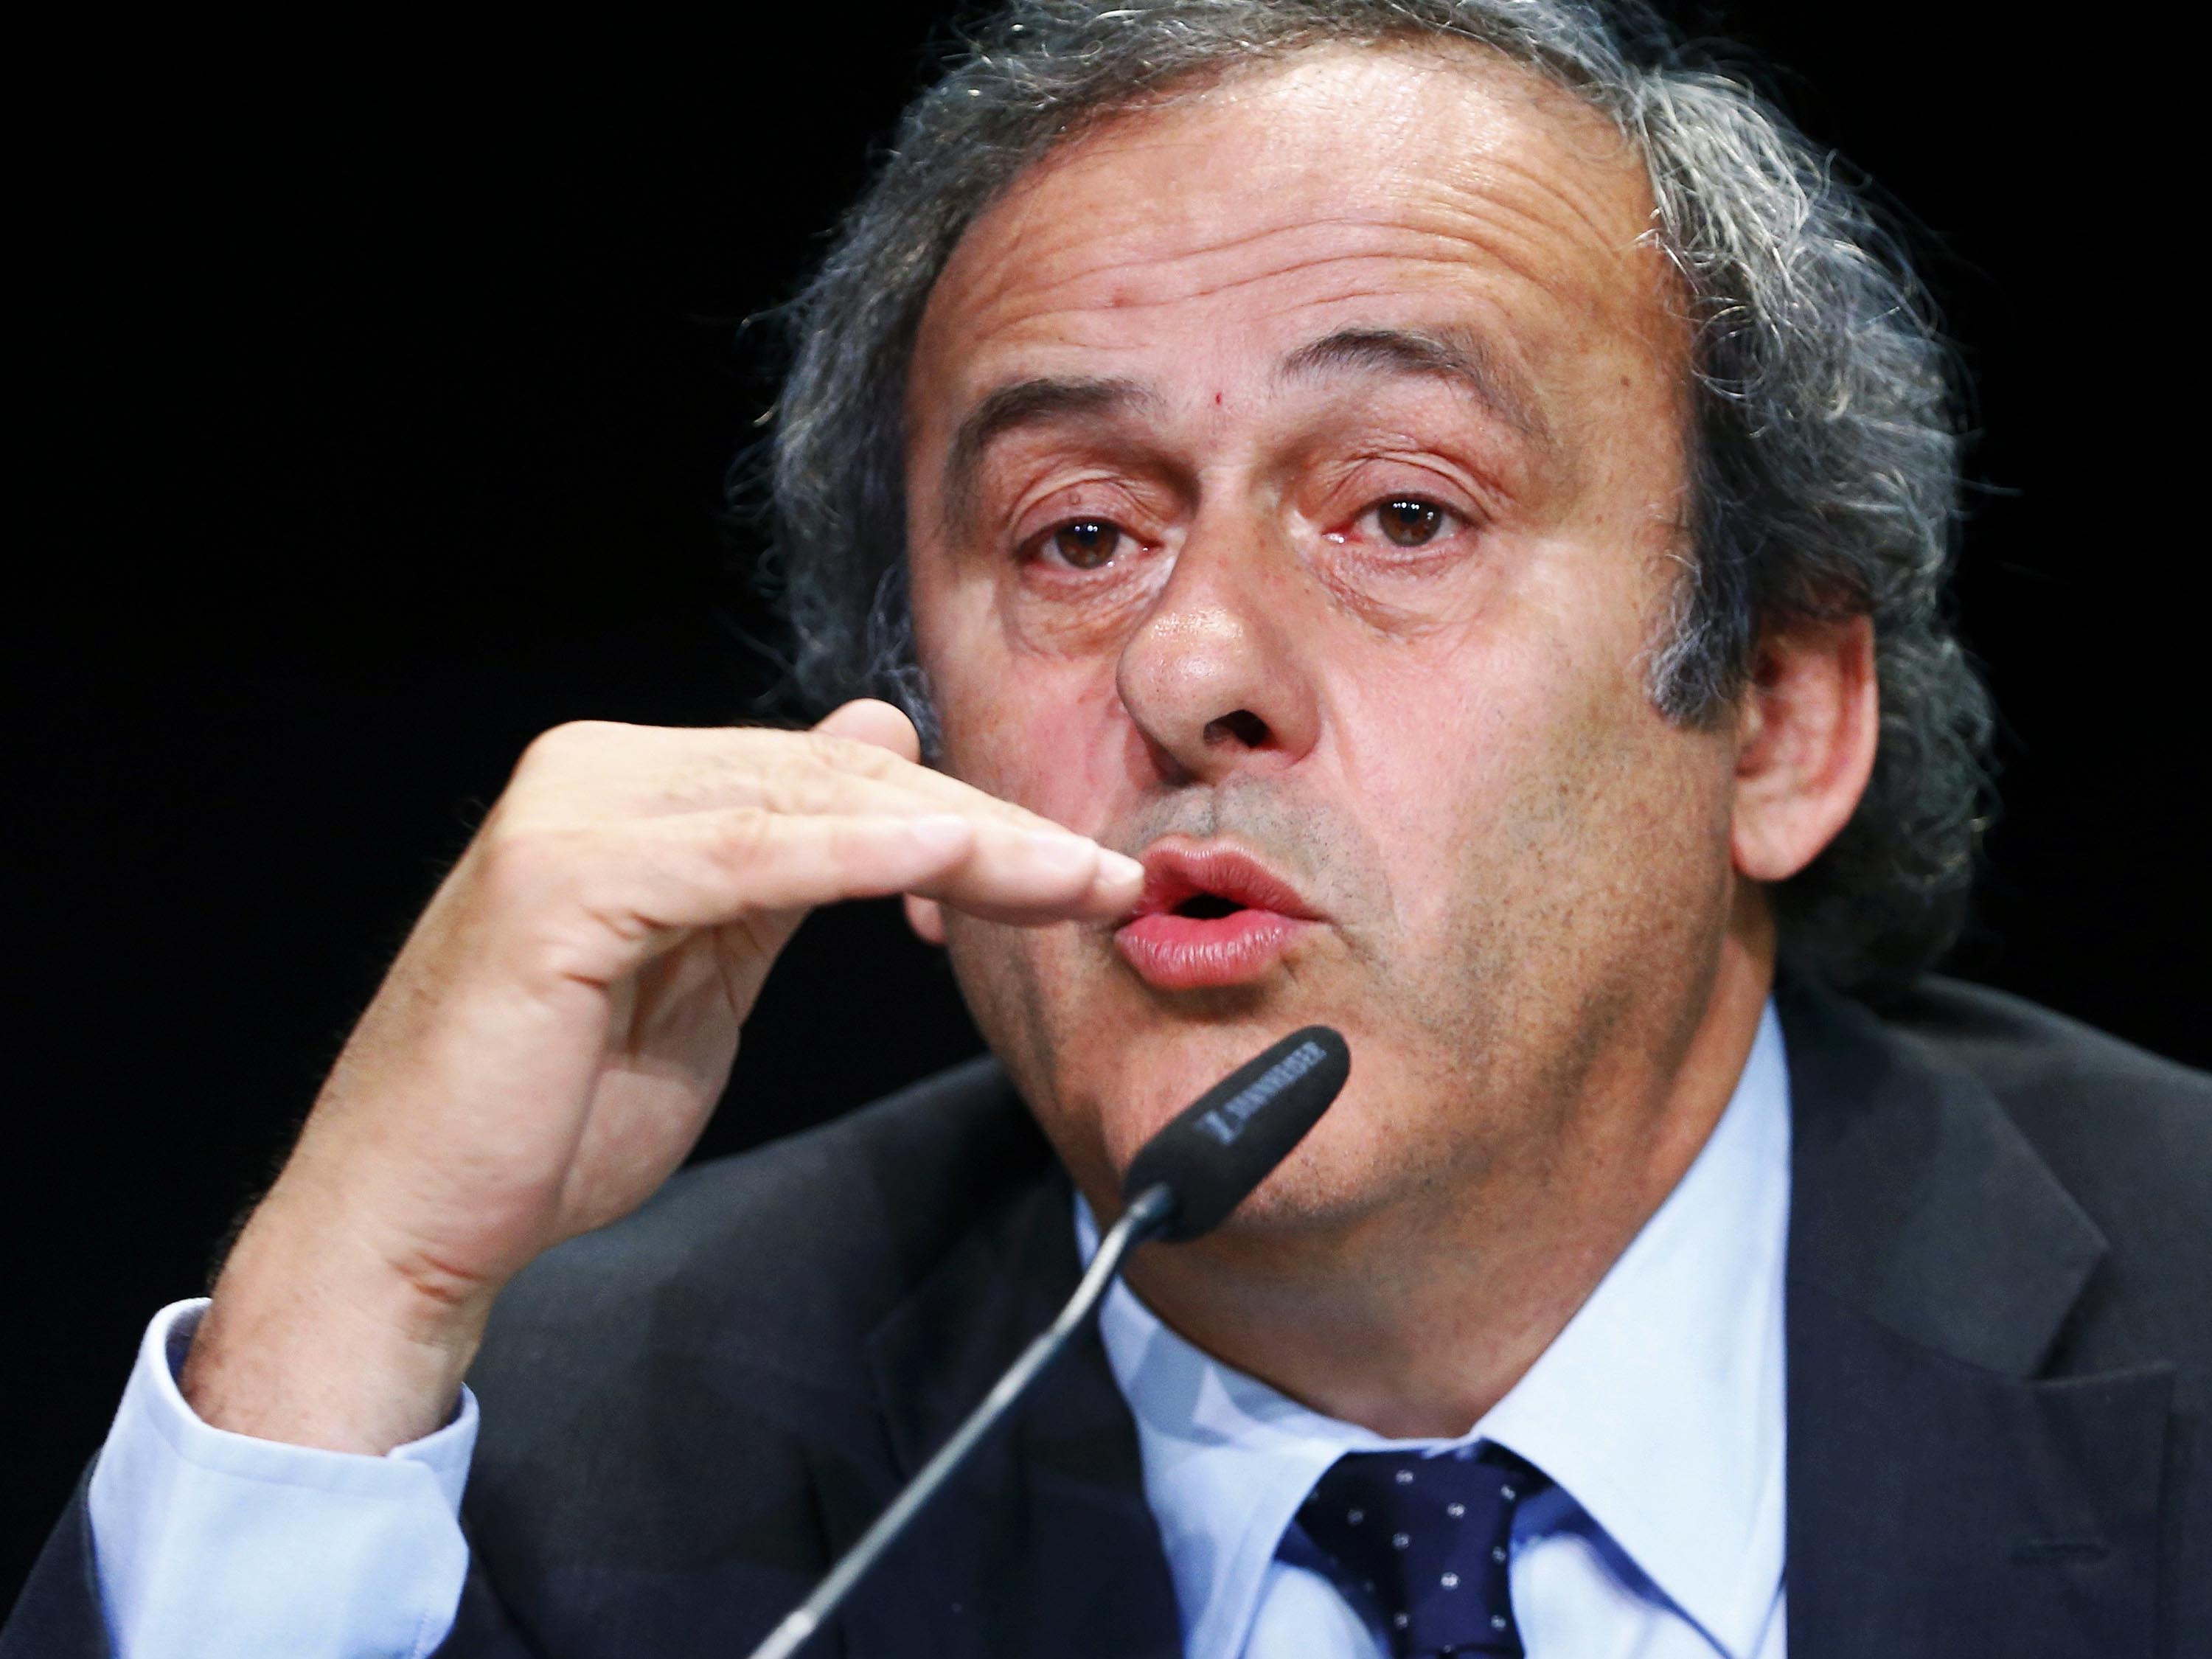 Uefa declara repúdio à suspensão de Platini e mantém apoio ao francês